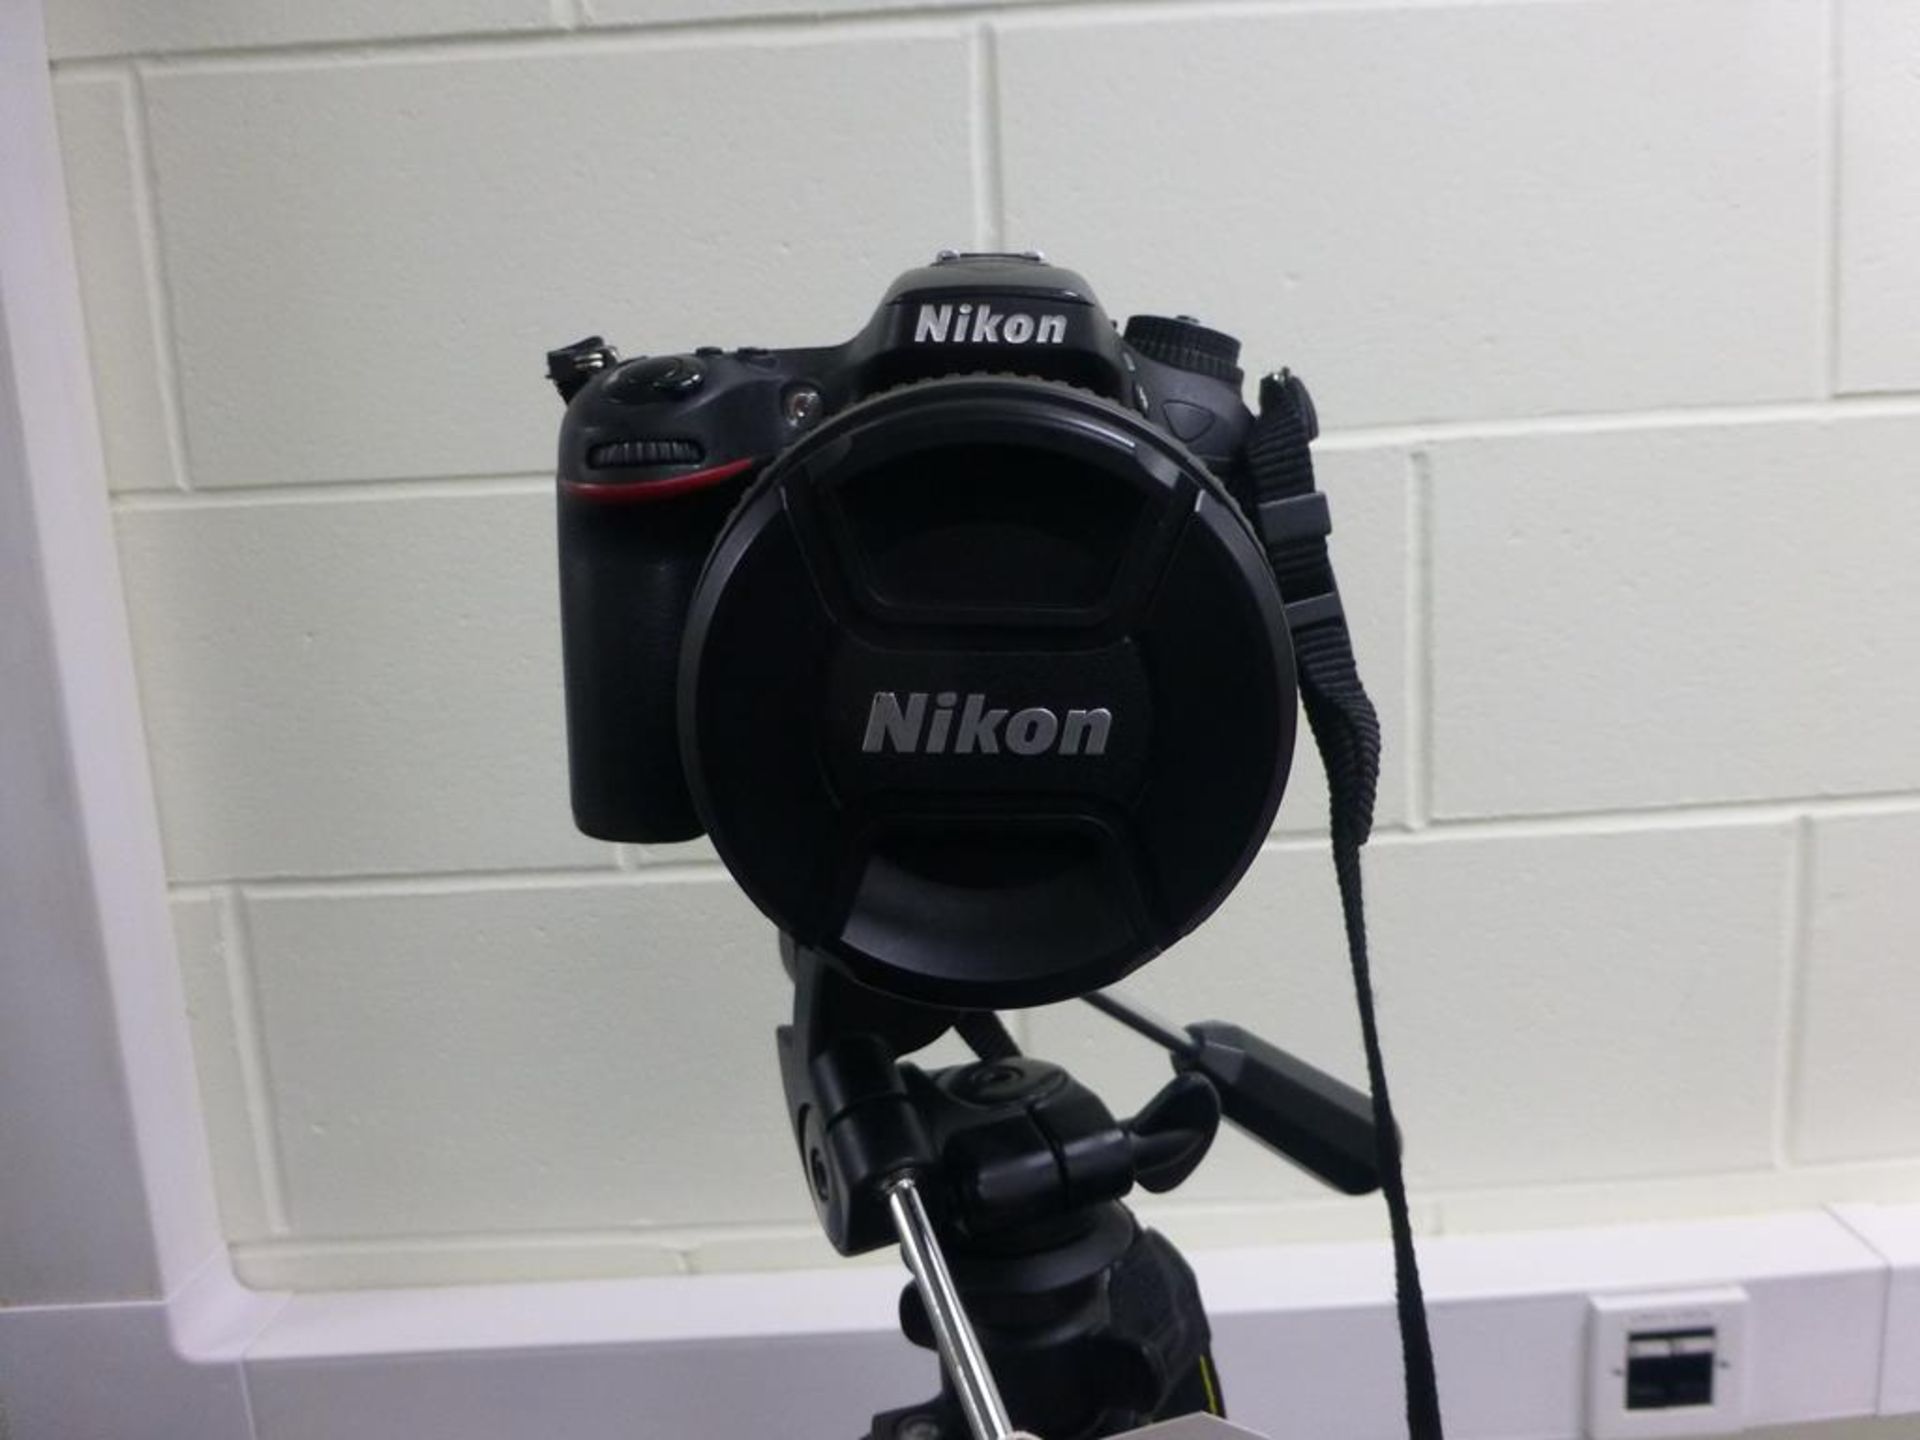 Nikon D7100 digital SLR camera with Nikon DXAF-SNIKKOR18-105mm lens, Vista tripod, charging lead and - Image 2 of 2